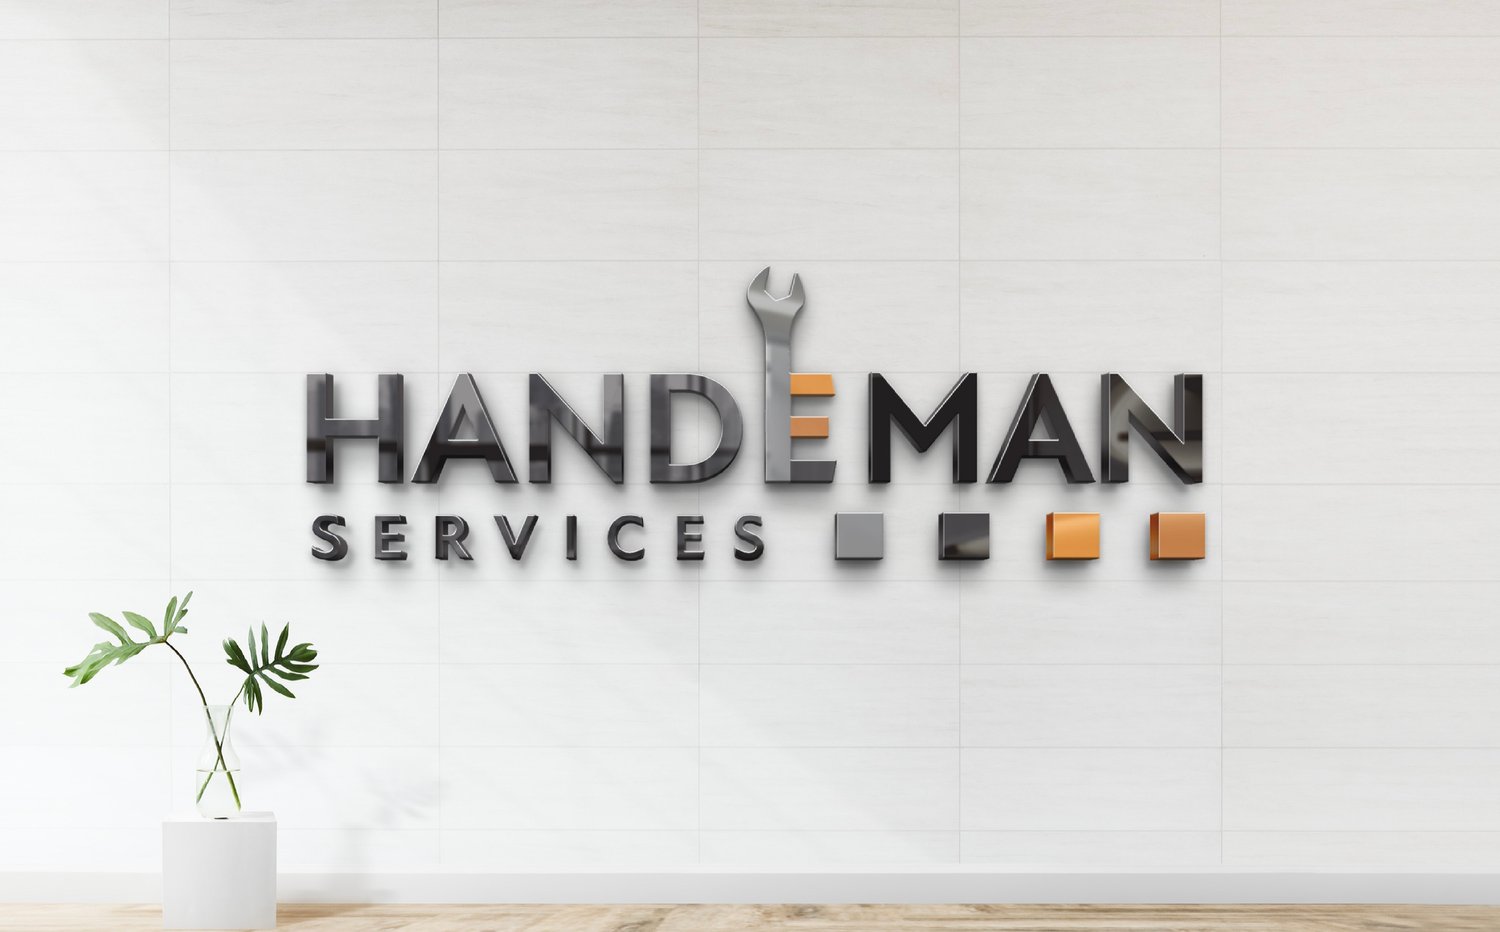 HANDEMAN SERVICES